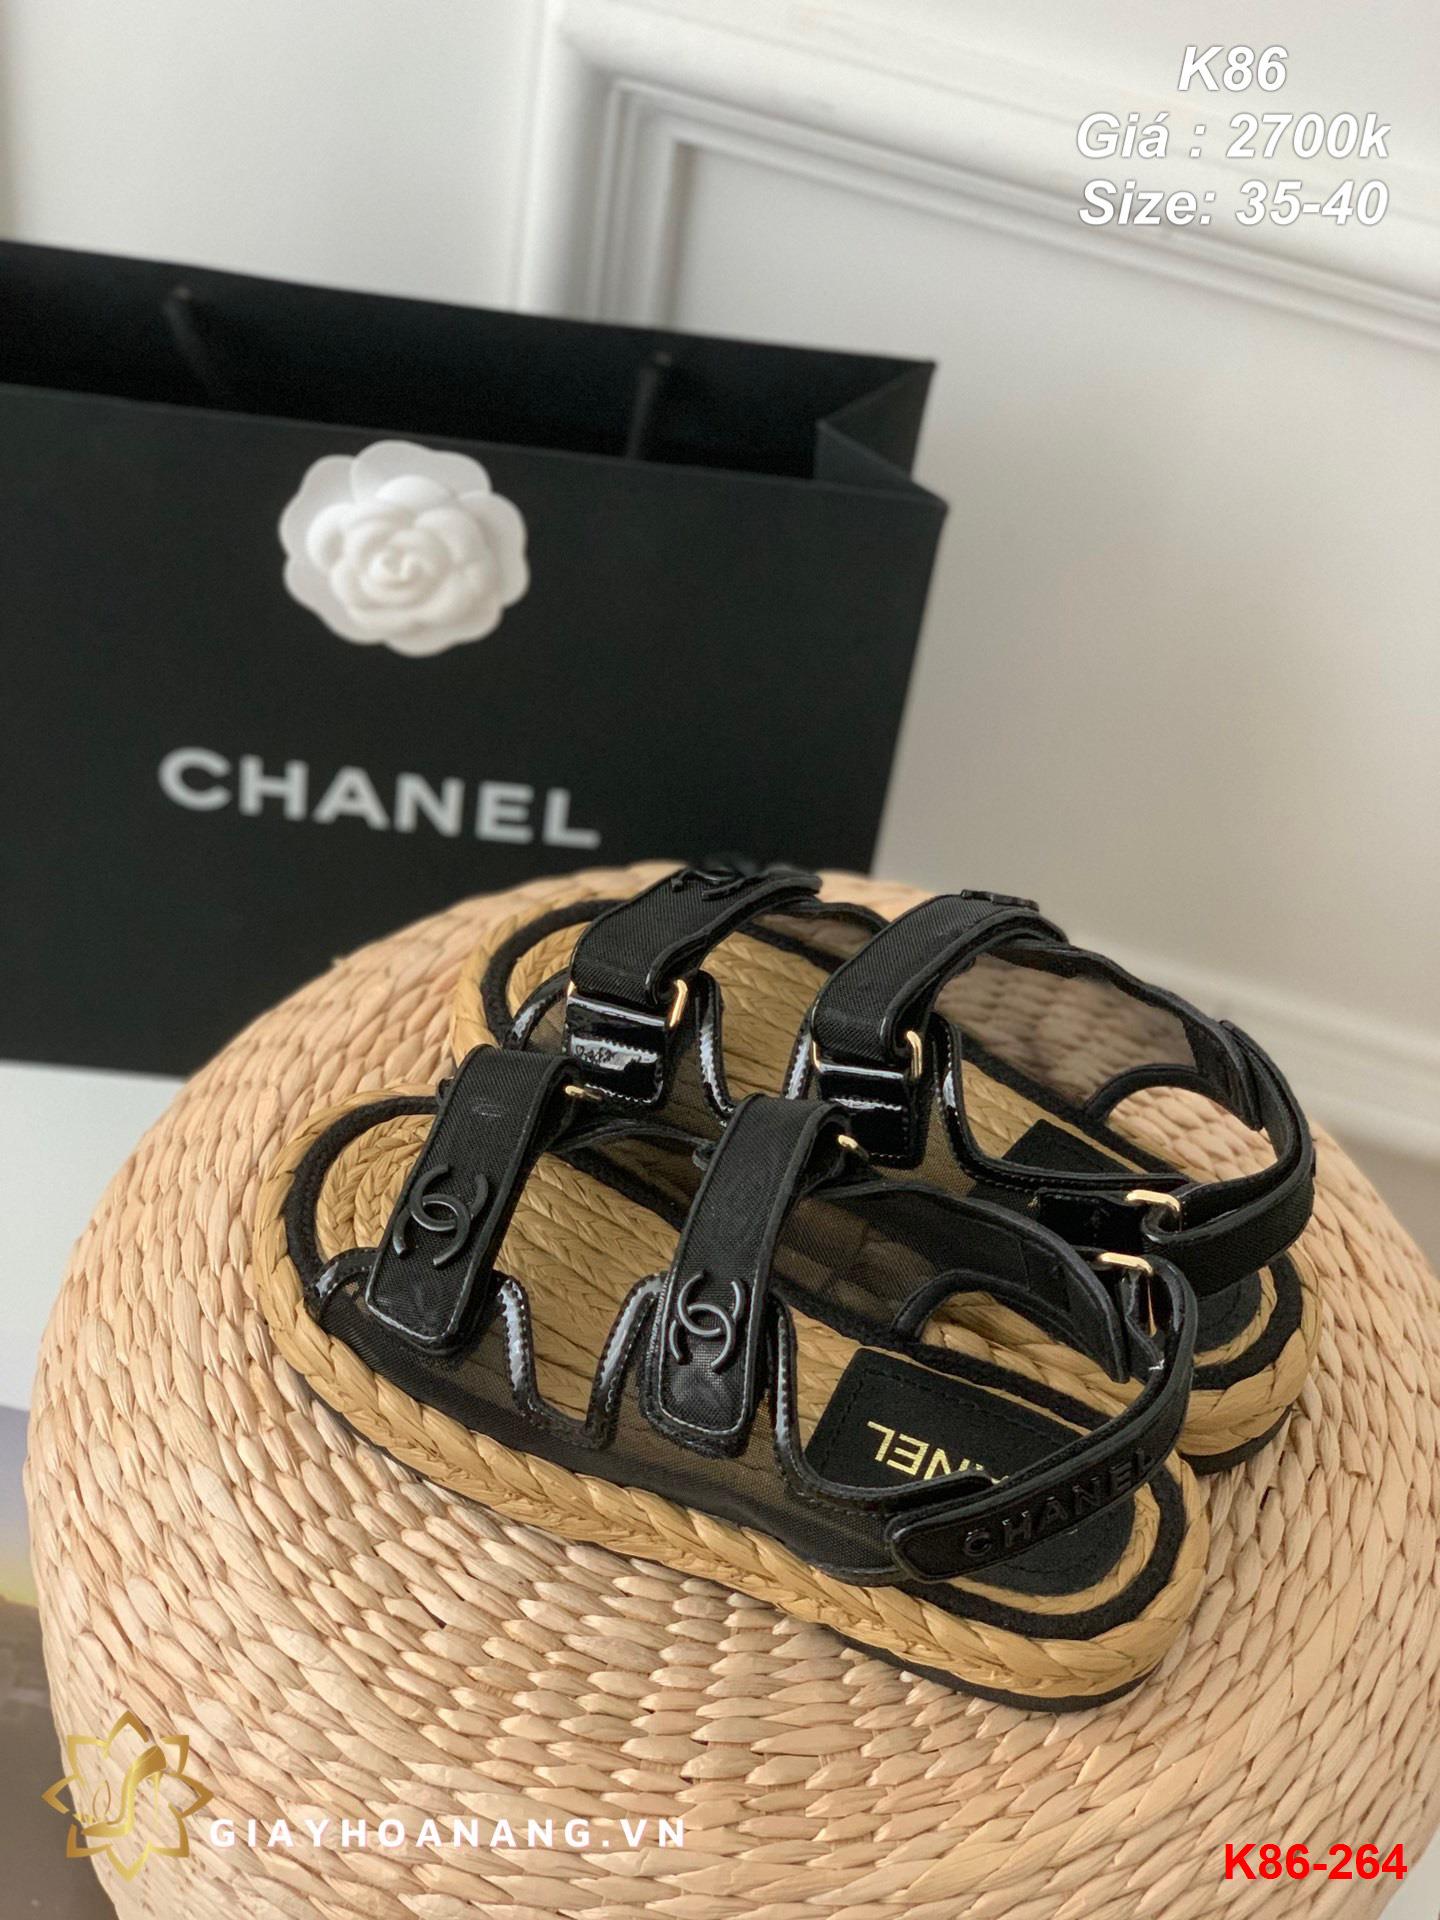 K86-264 Chanel sandal siêu cấp